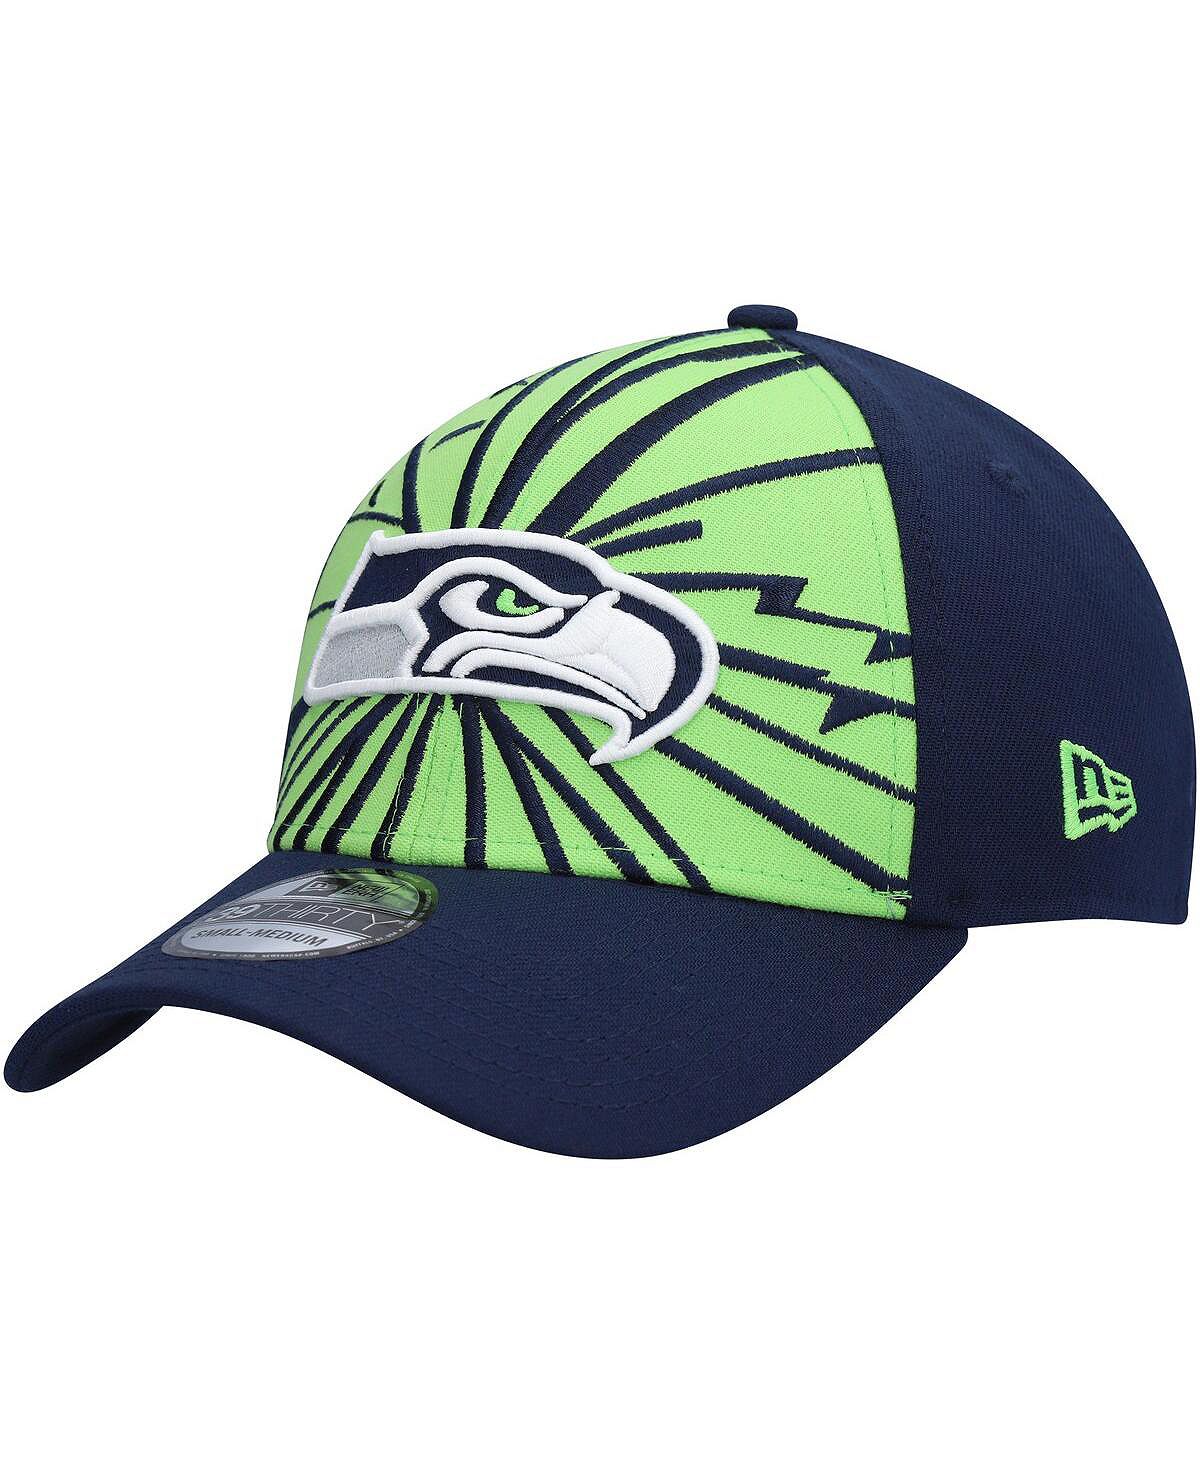 Мужская неоново-зеленая, темно-синяя кепка Seattle Seahawks Shattered 39THIRTY Flex. New Era